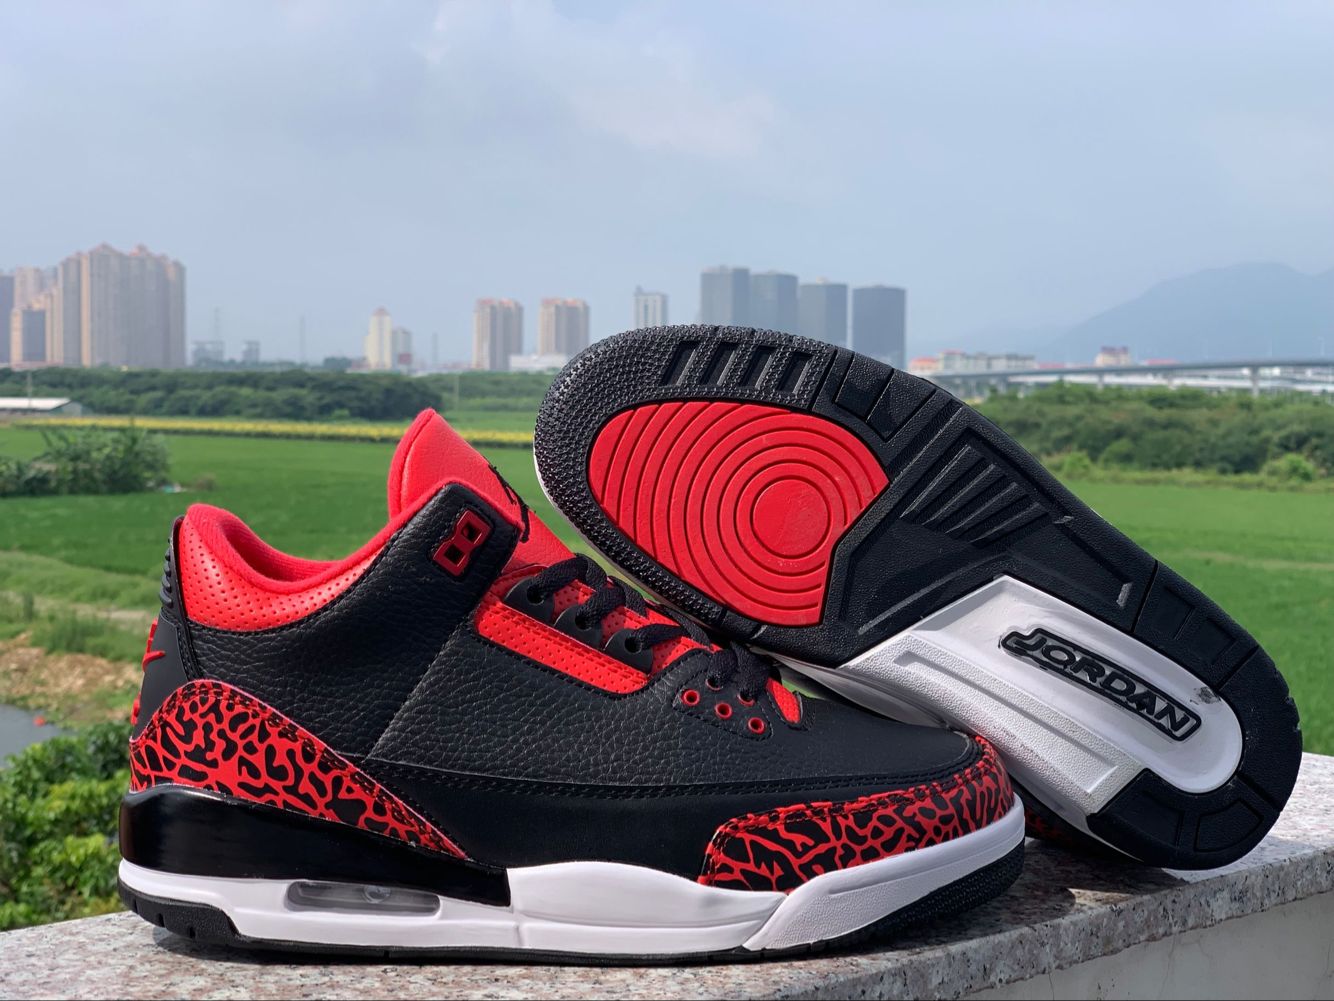 2019 Air Jordan 3 Bred Red Black Shoes